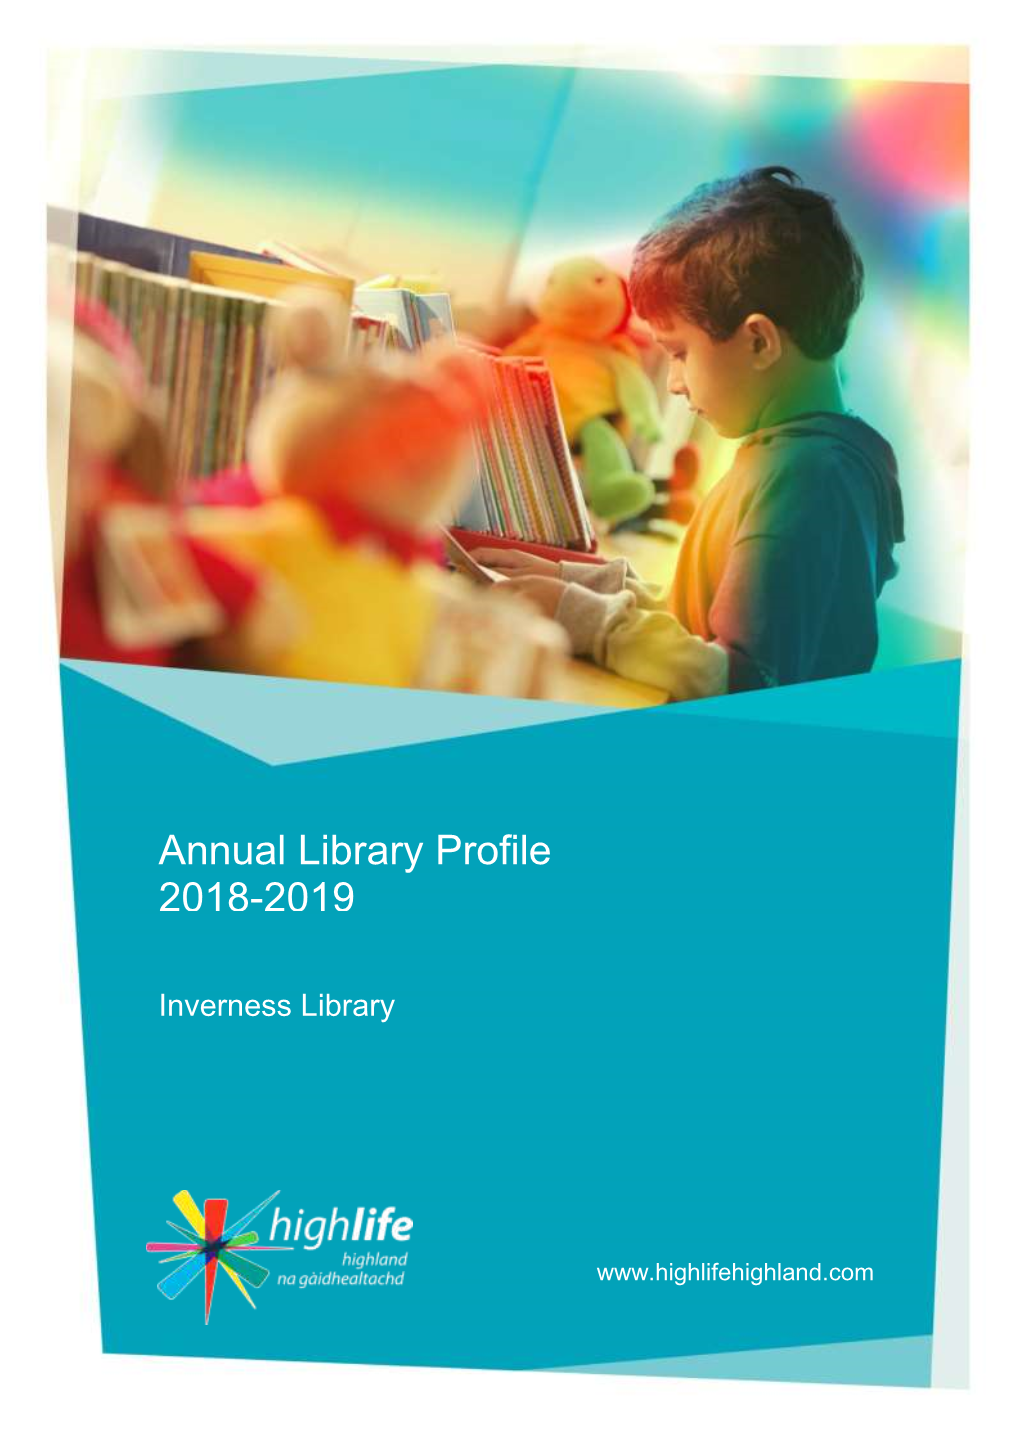 Annual Library Profile 2018-2019